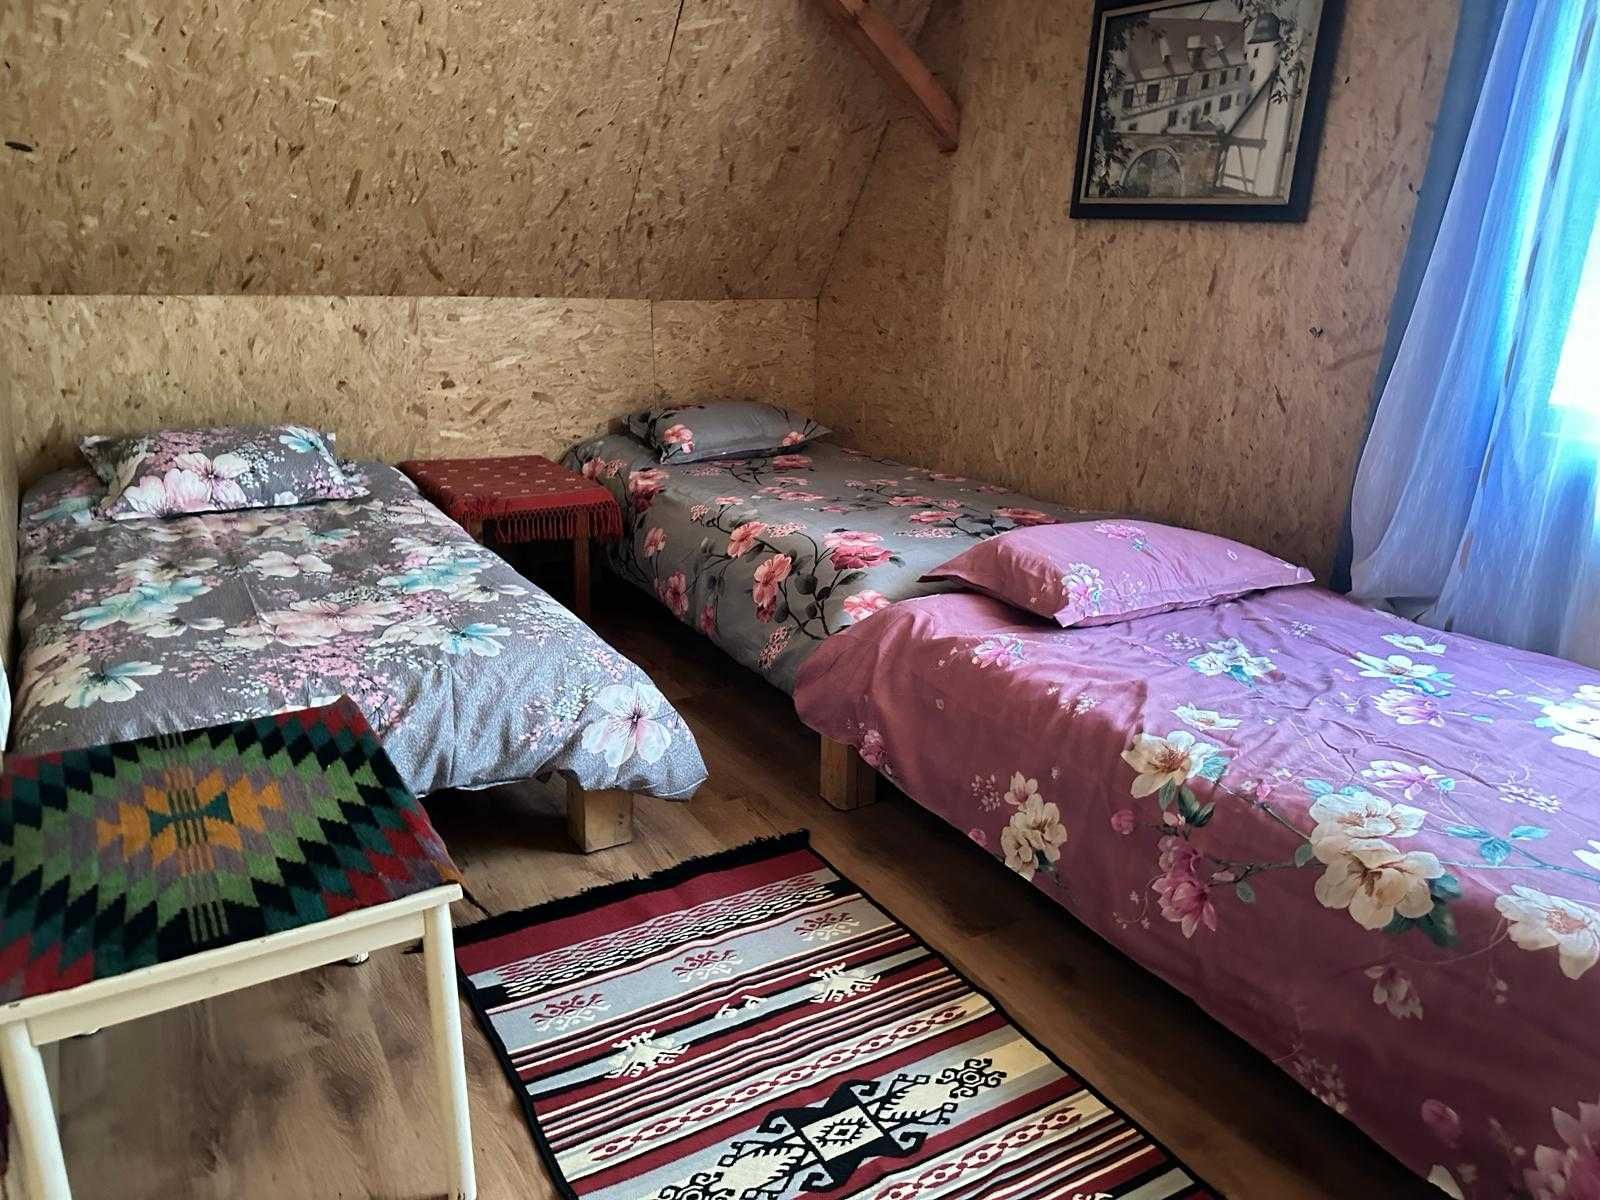 Cabana de închiriat in Băișoara